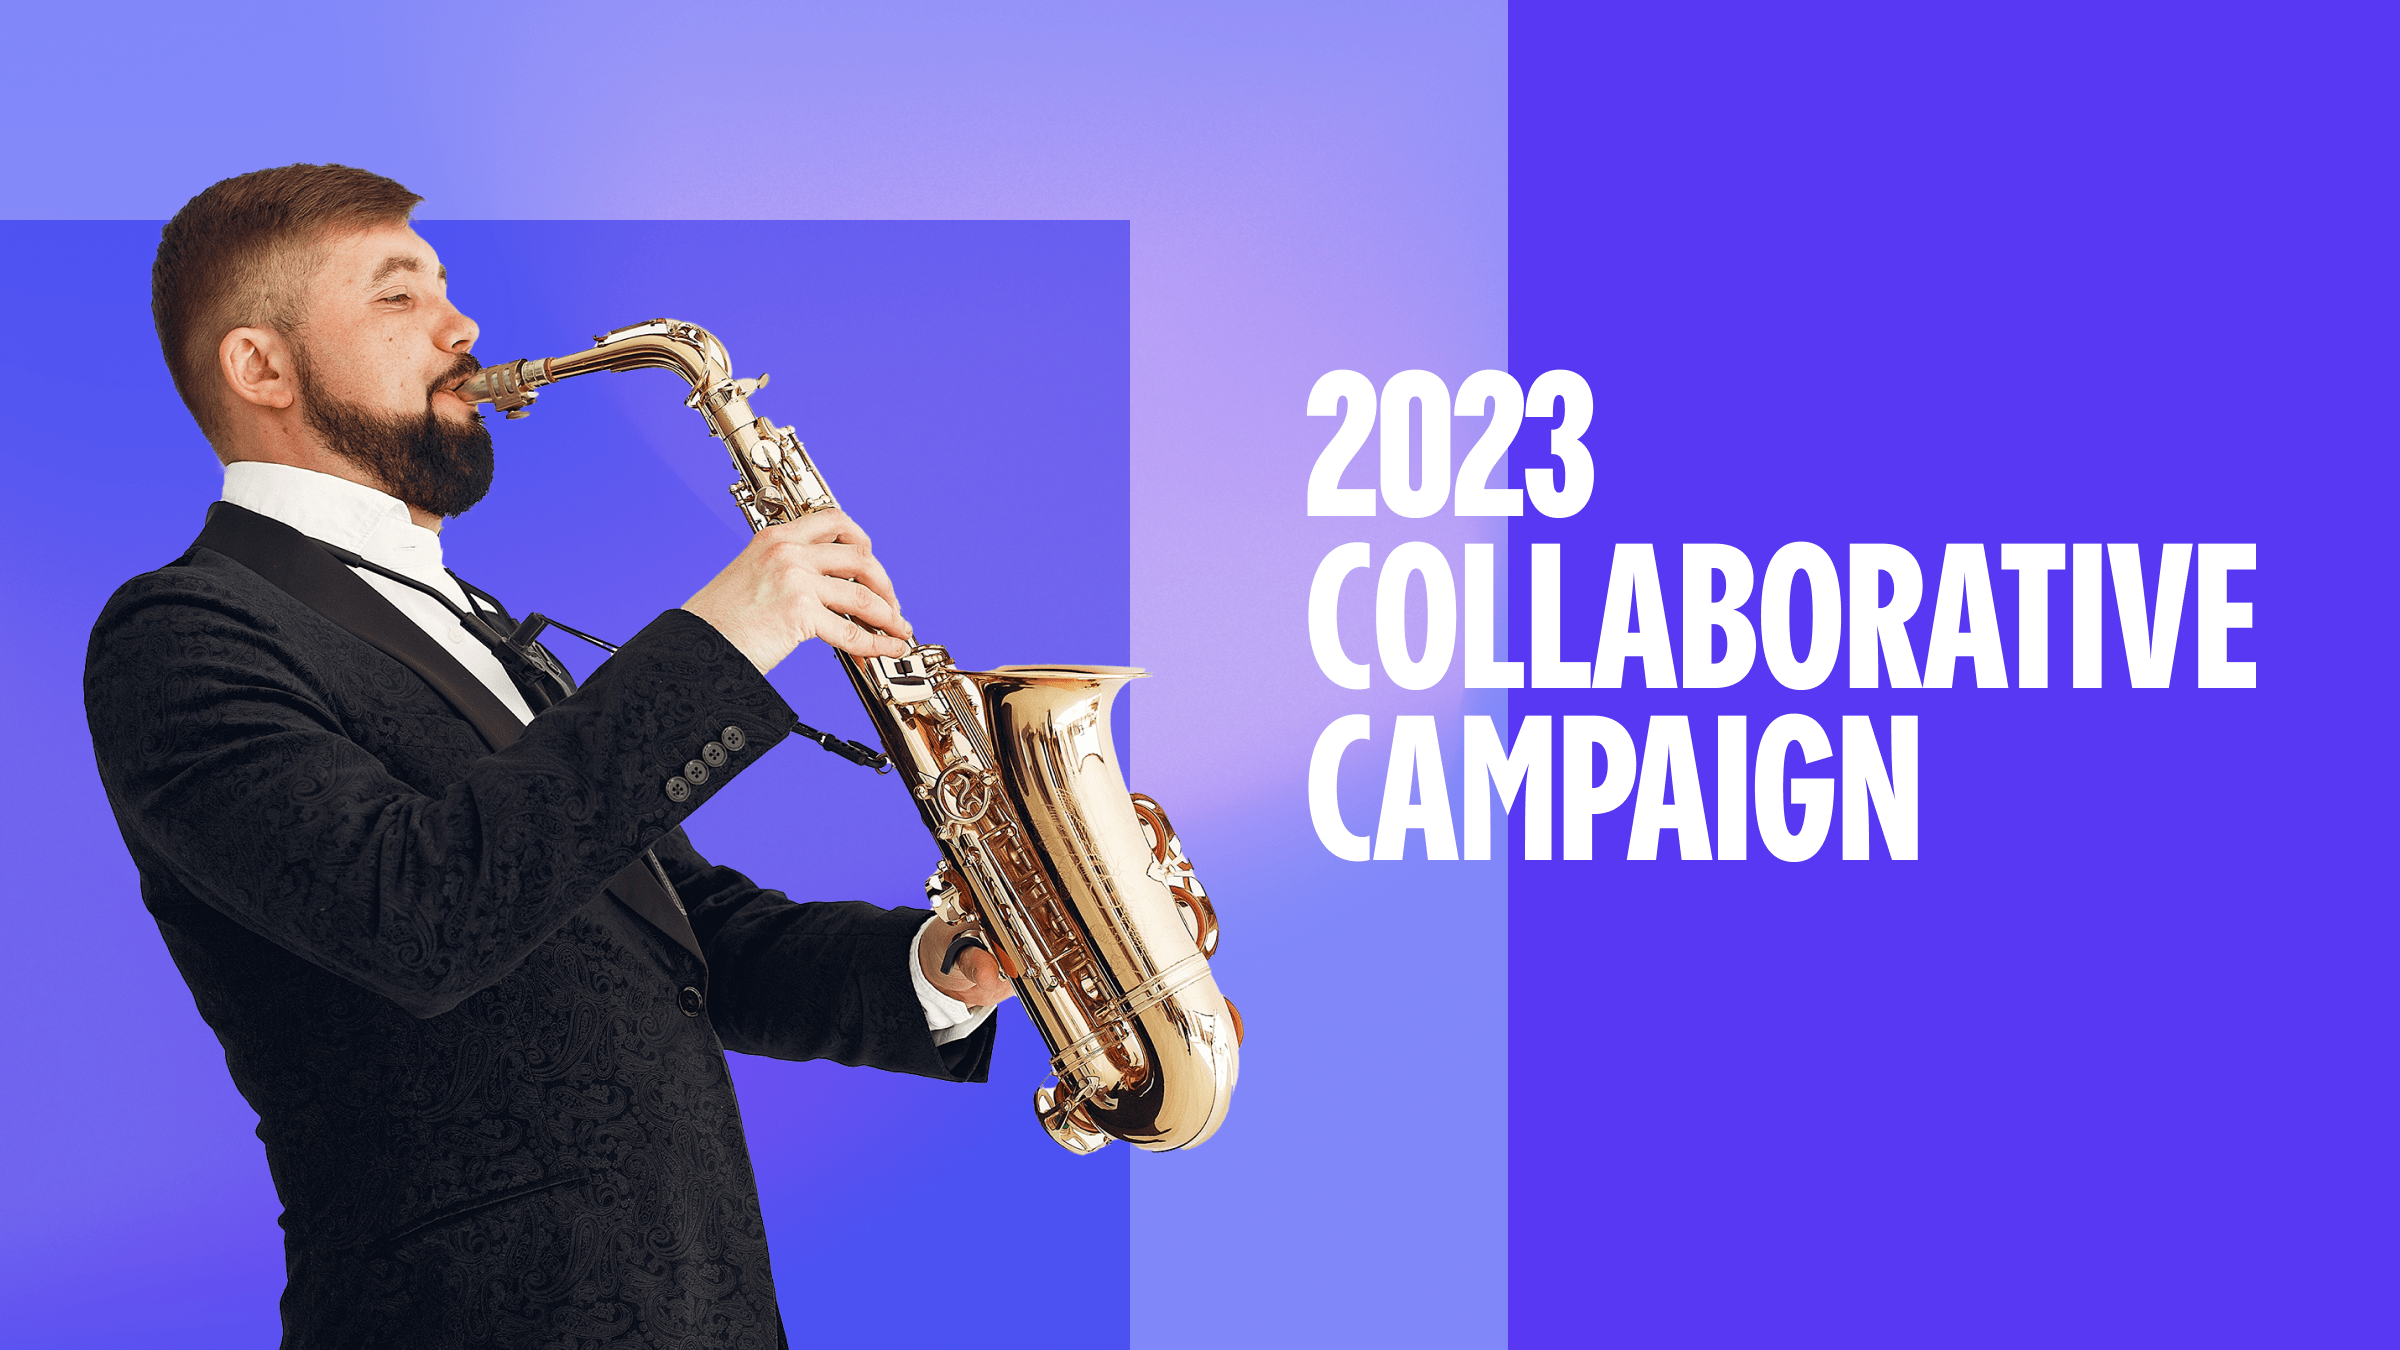 The 2023 Collaborative Campaign